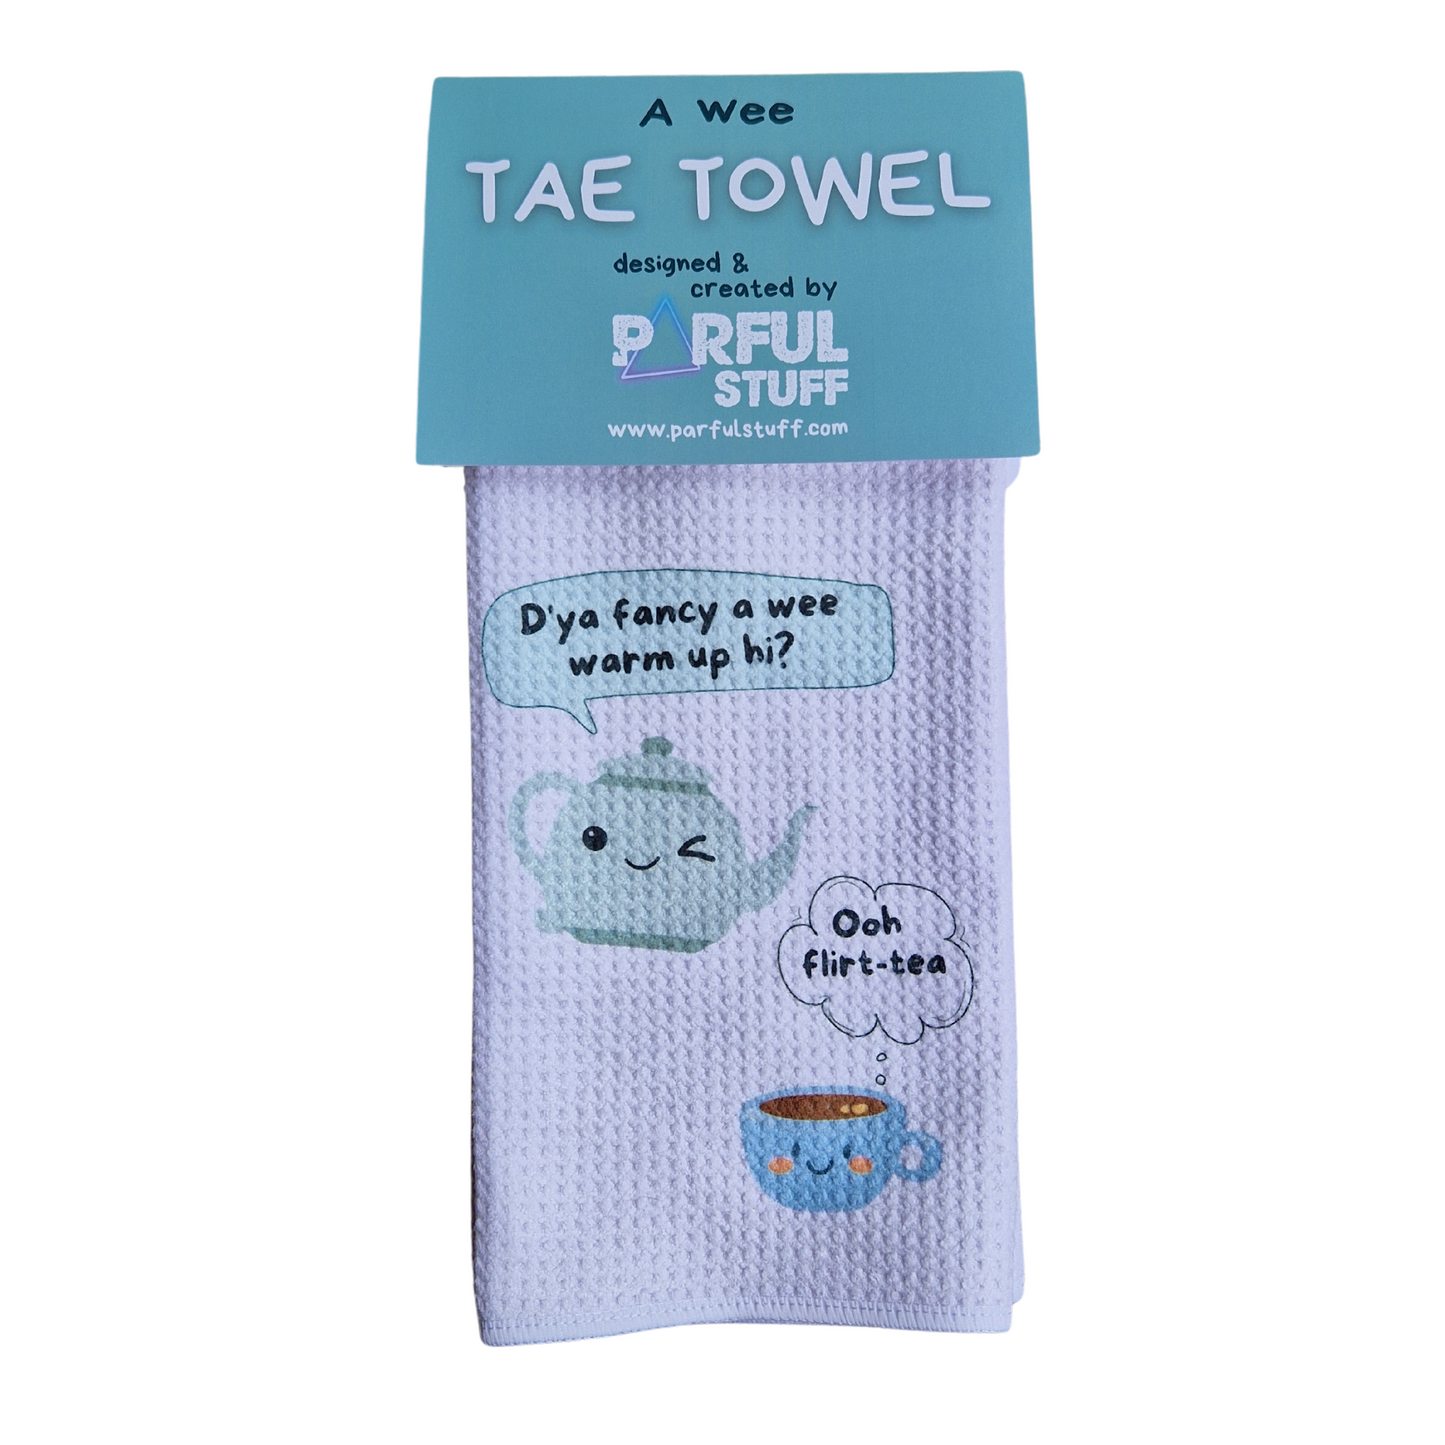 FLIRT-TEA TAE TOWEL